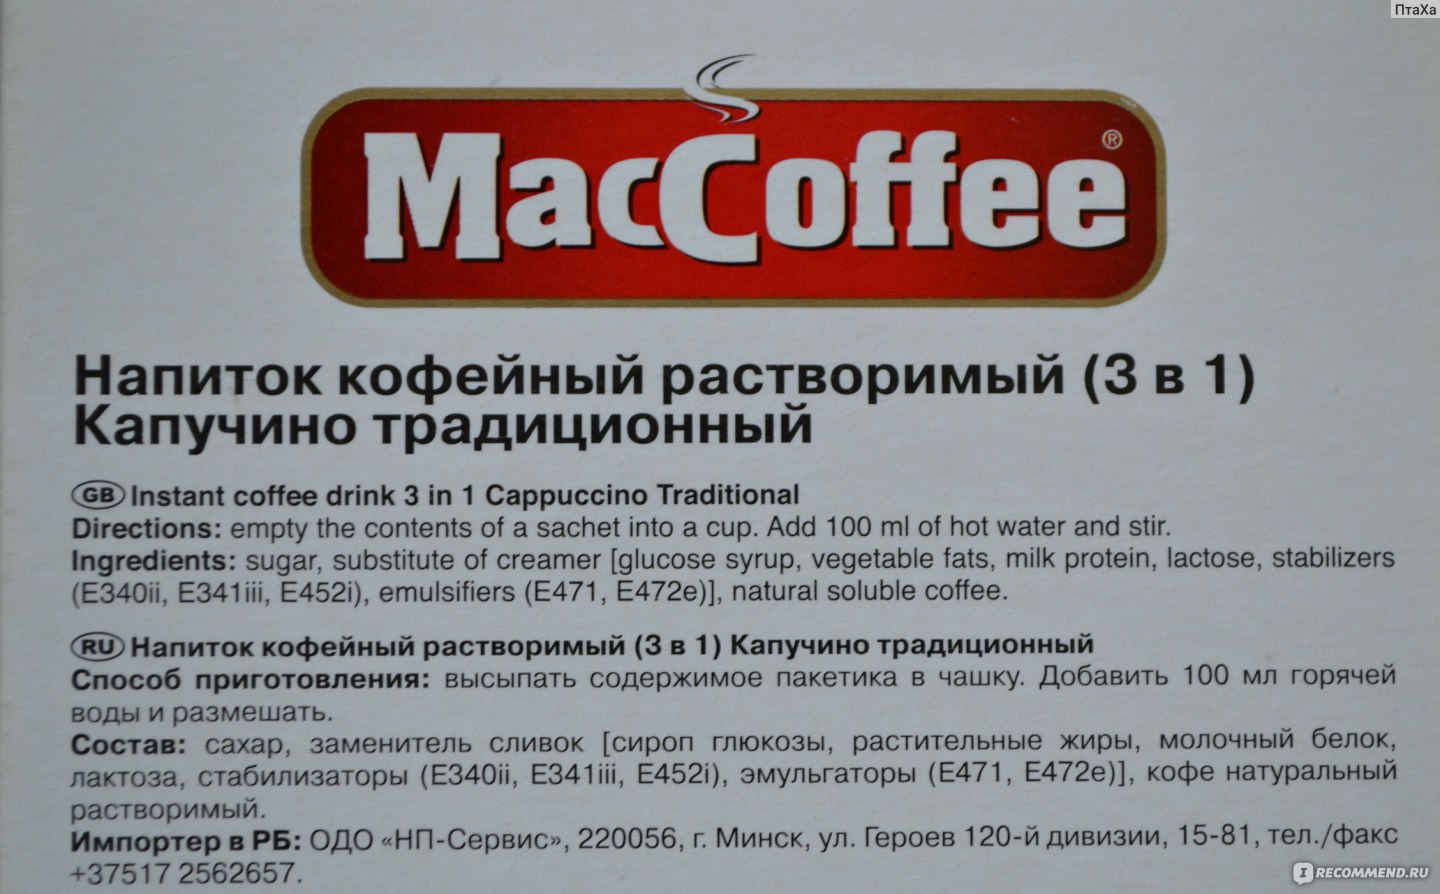 Кофейный напиток состав. Состав кофе 3 в 1 Маккофе. MACCOFFEE 3 В 1 состав. Мак кофе. Кофе Маккофе производитель.